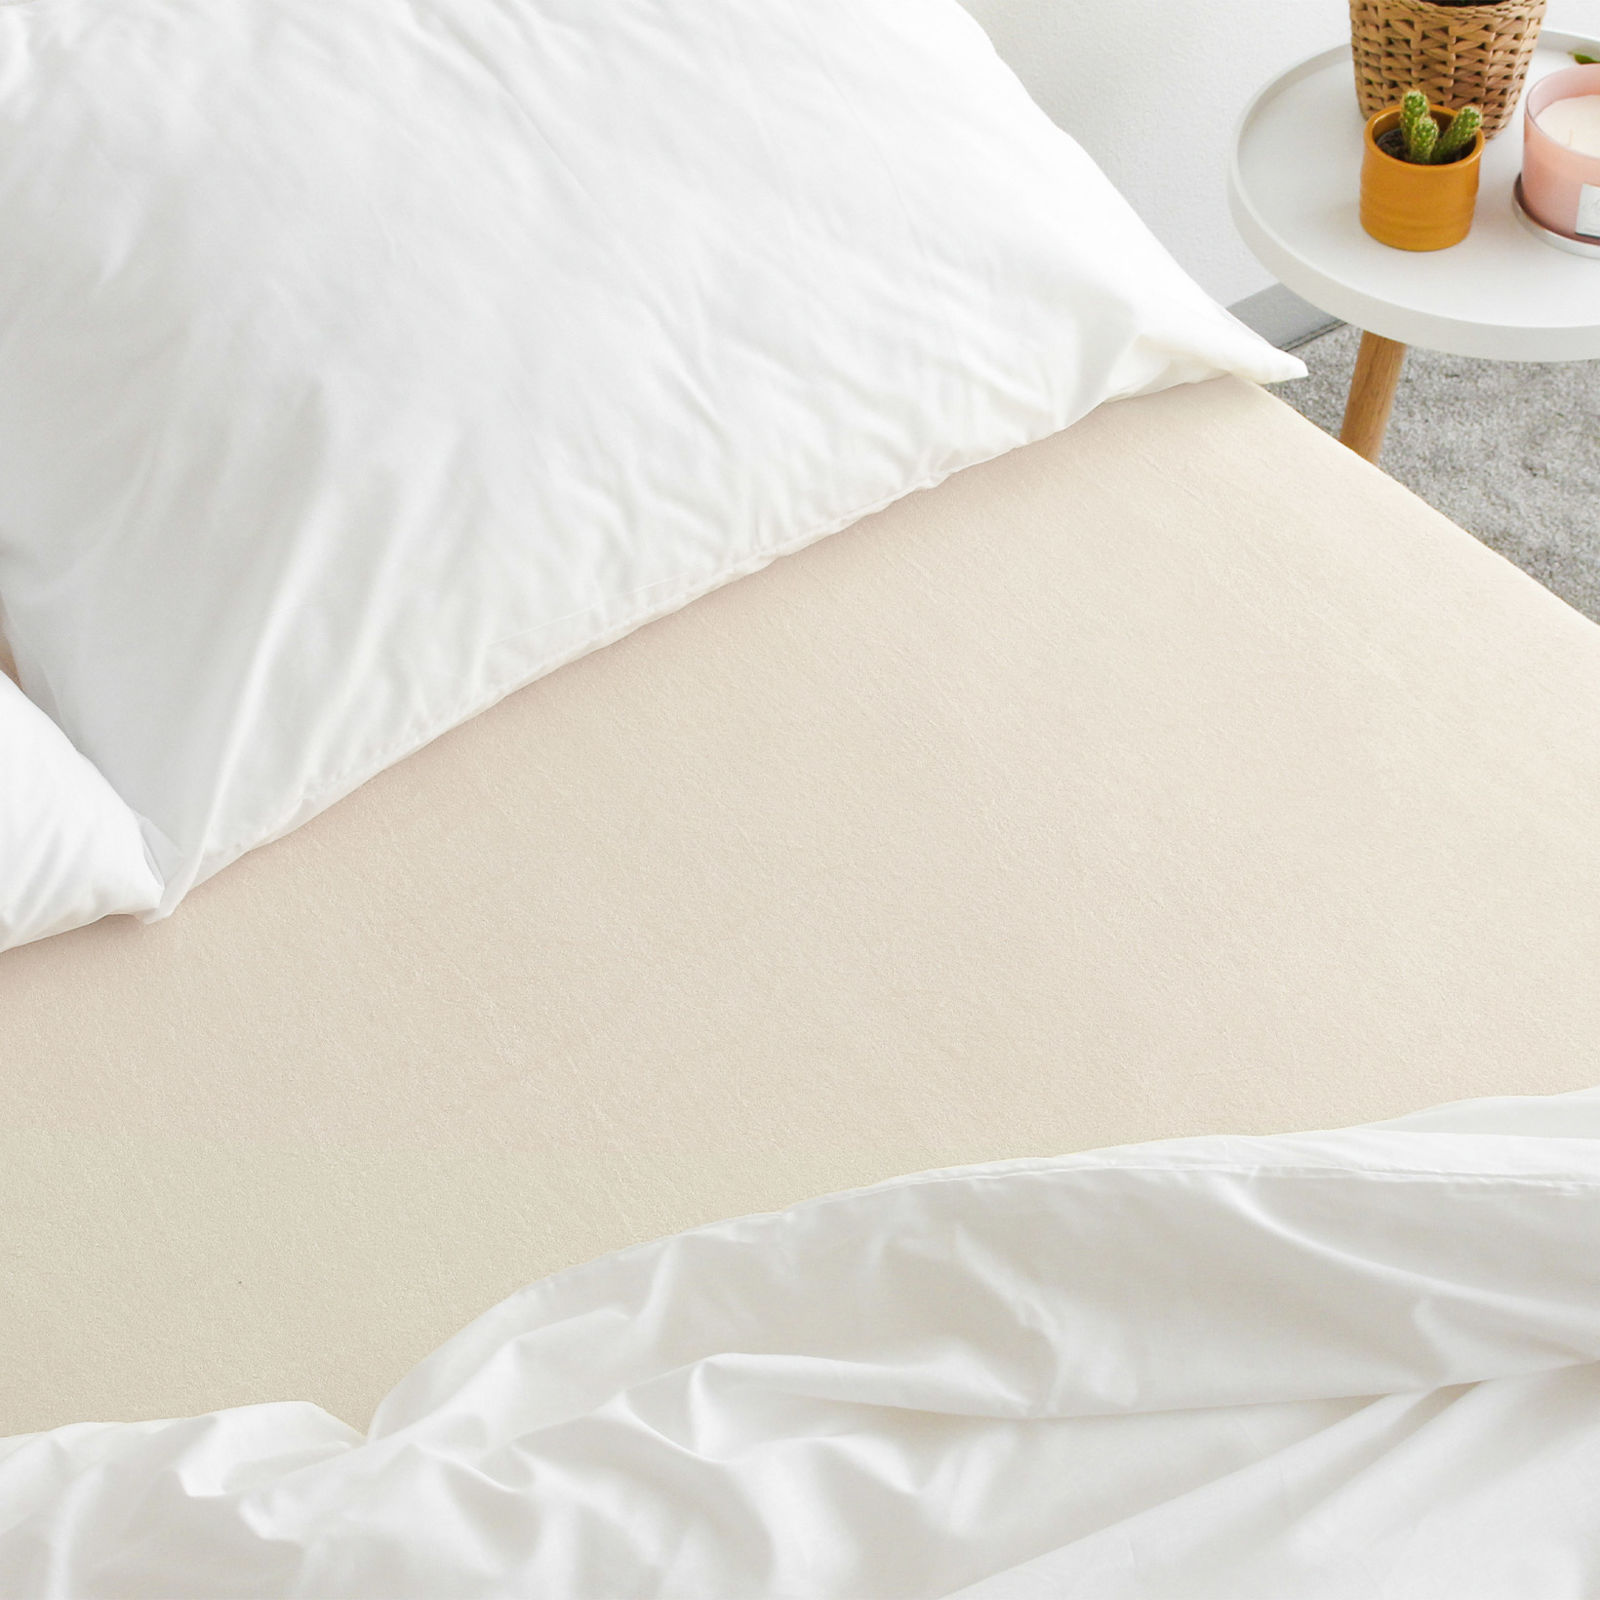 Exkluzív frottír körgumis lepedő magas matracokhoz - krémszínű